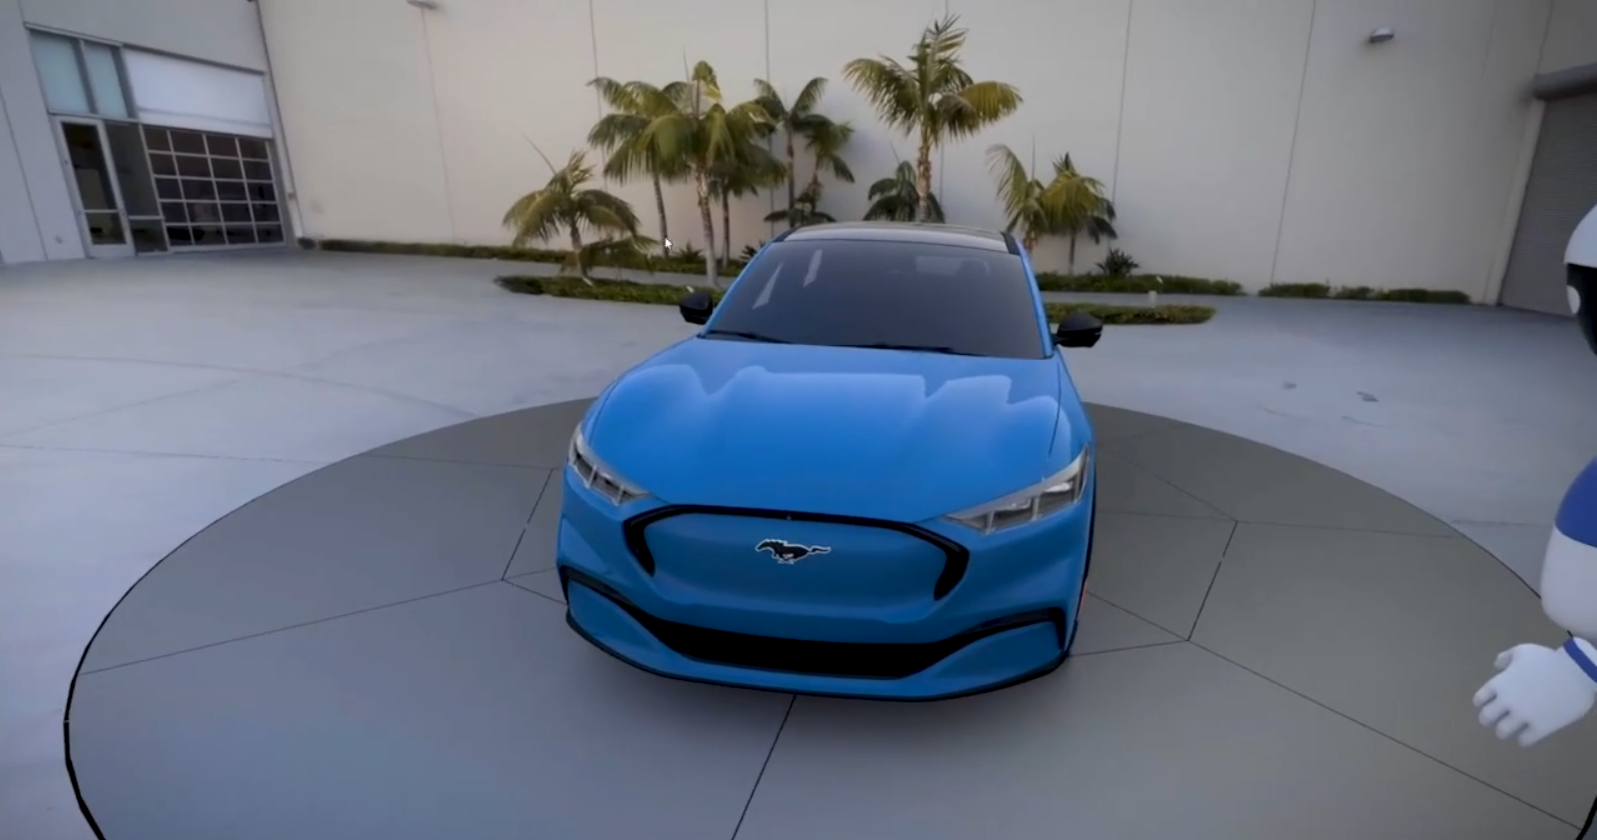 W Fordzie pracują nad przyszłymi modelami aut zdalnie w VR